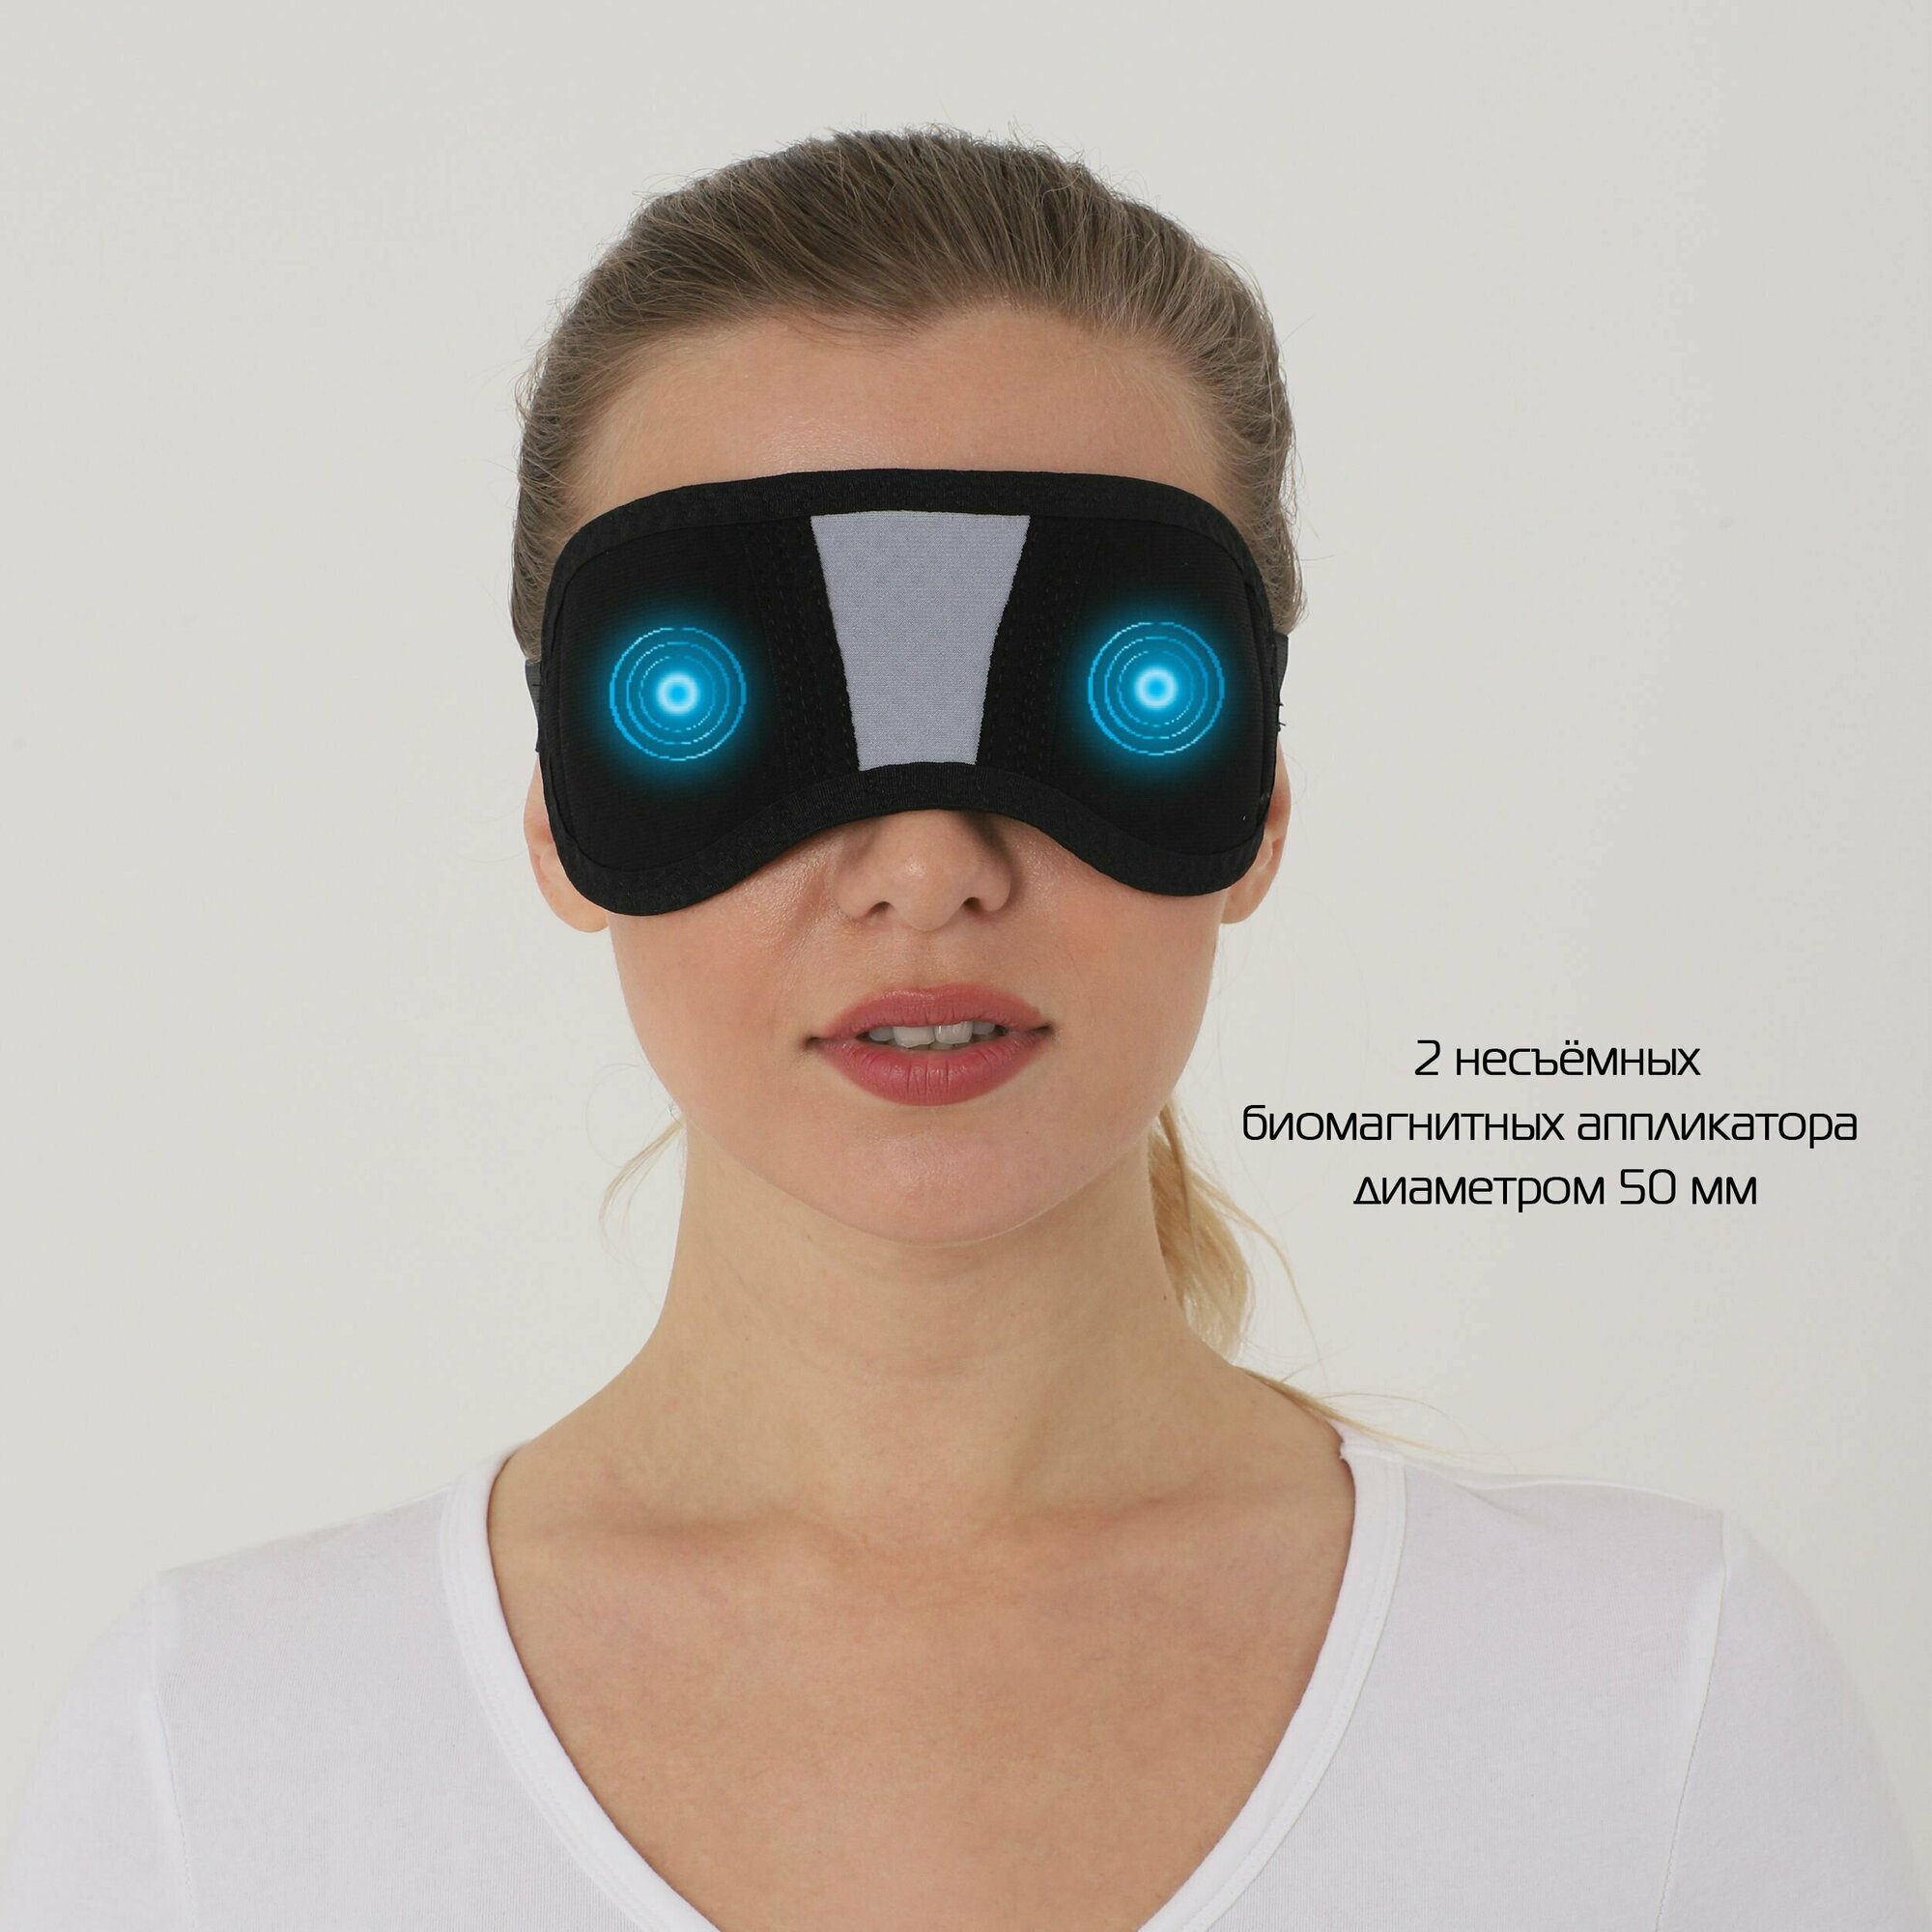 А-100 Бандаж на глаза с аппликаторами биомагнитными медицинскими